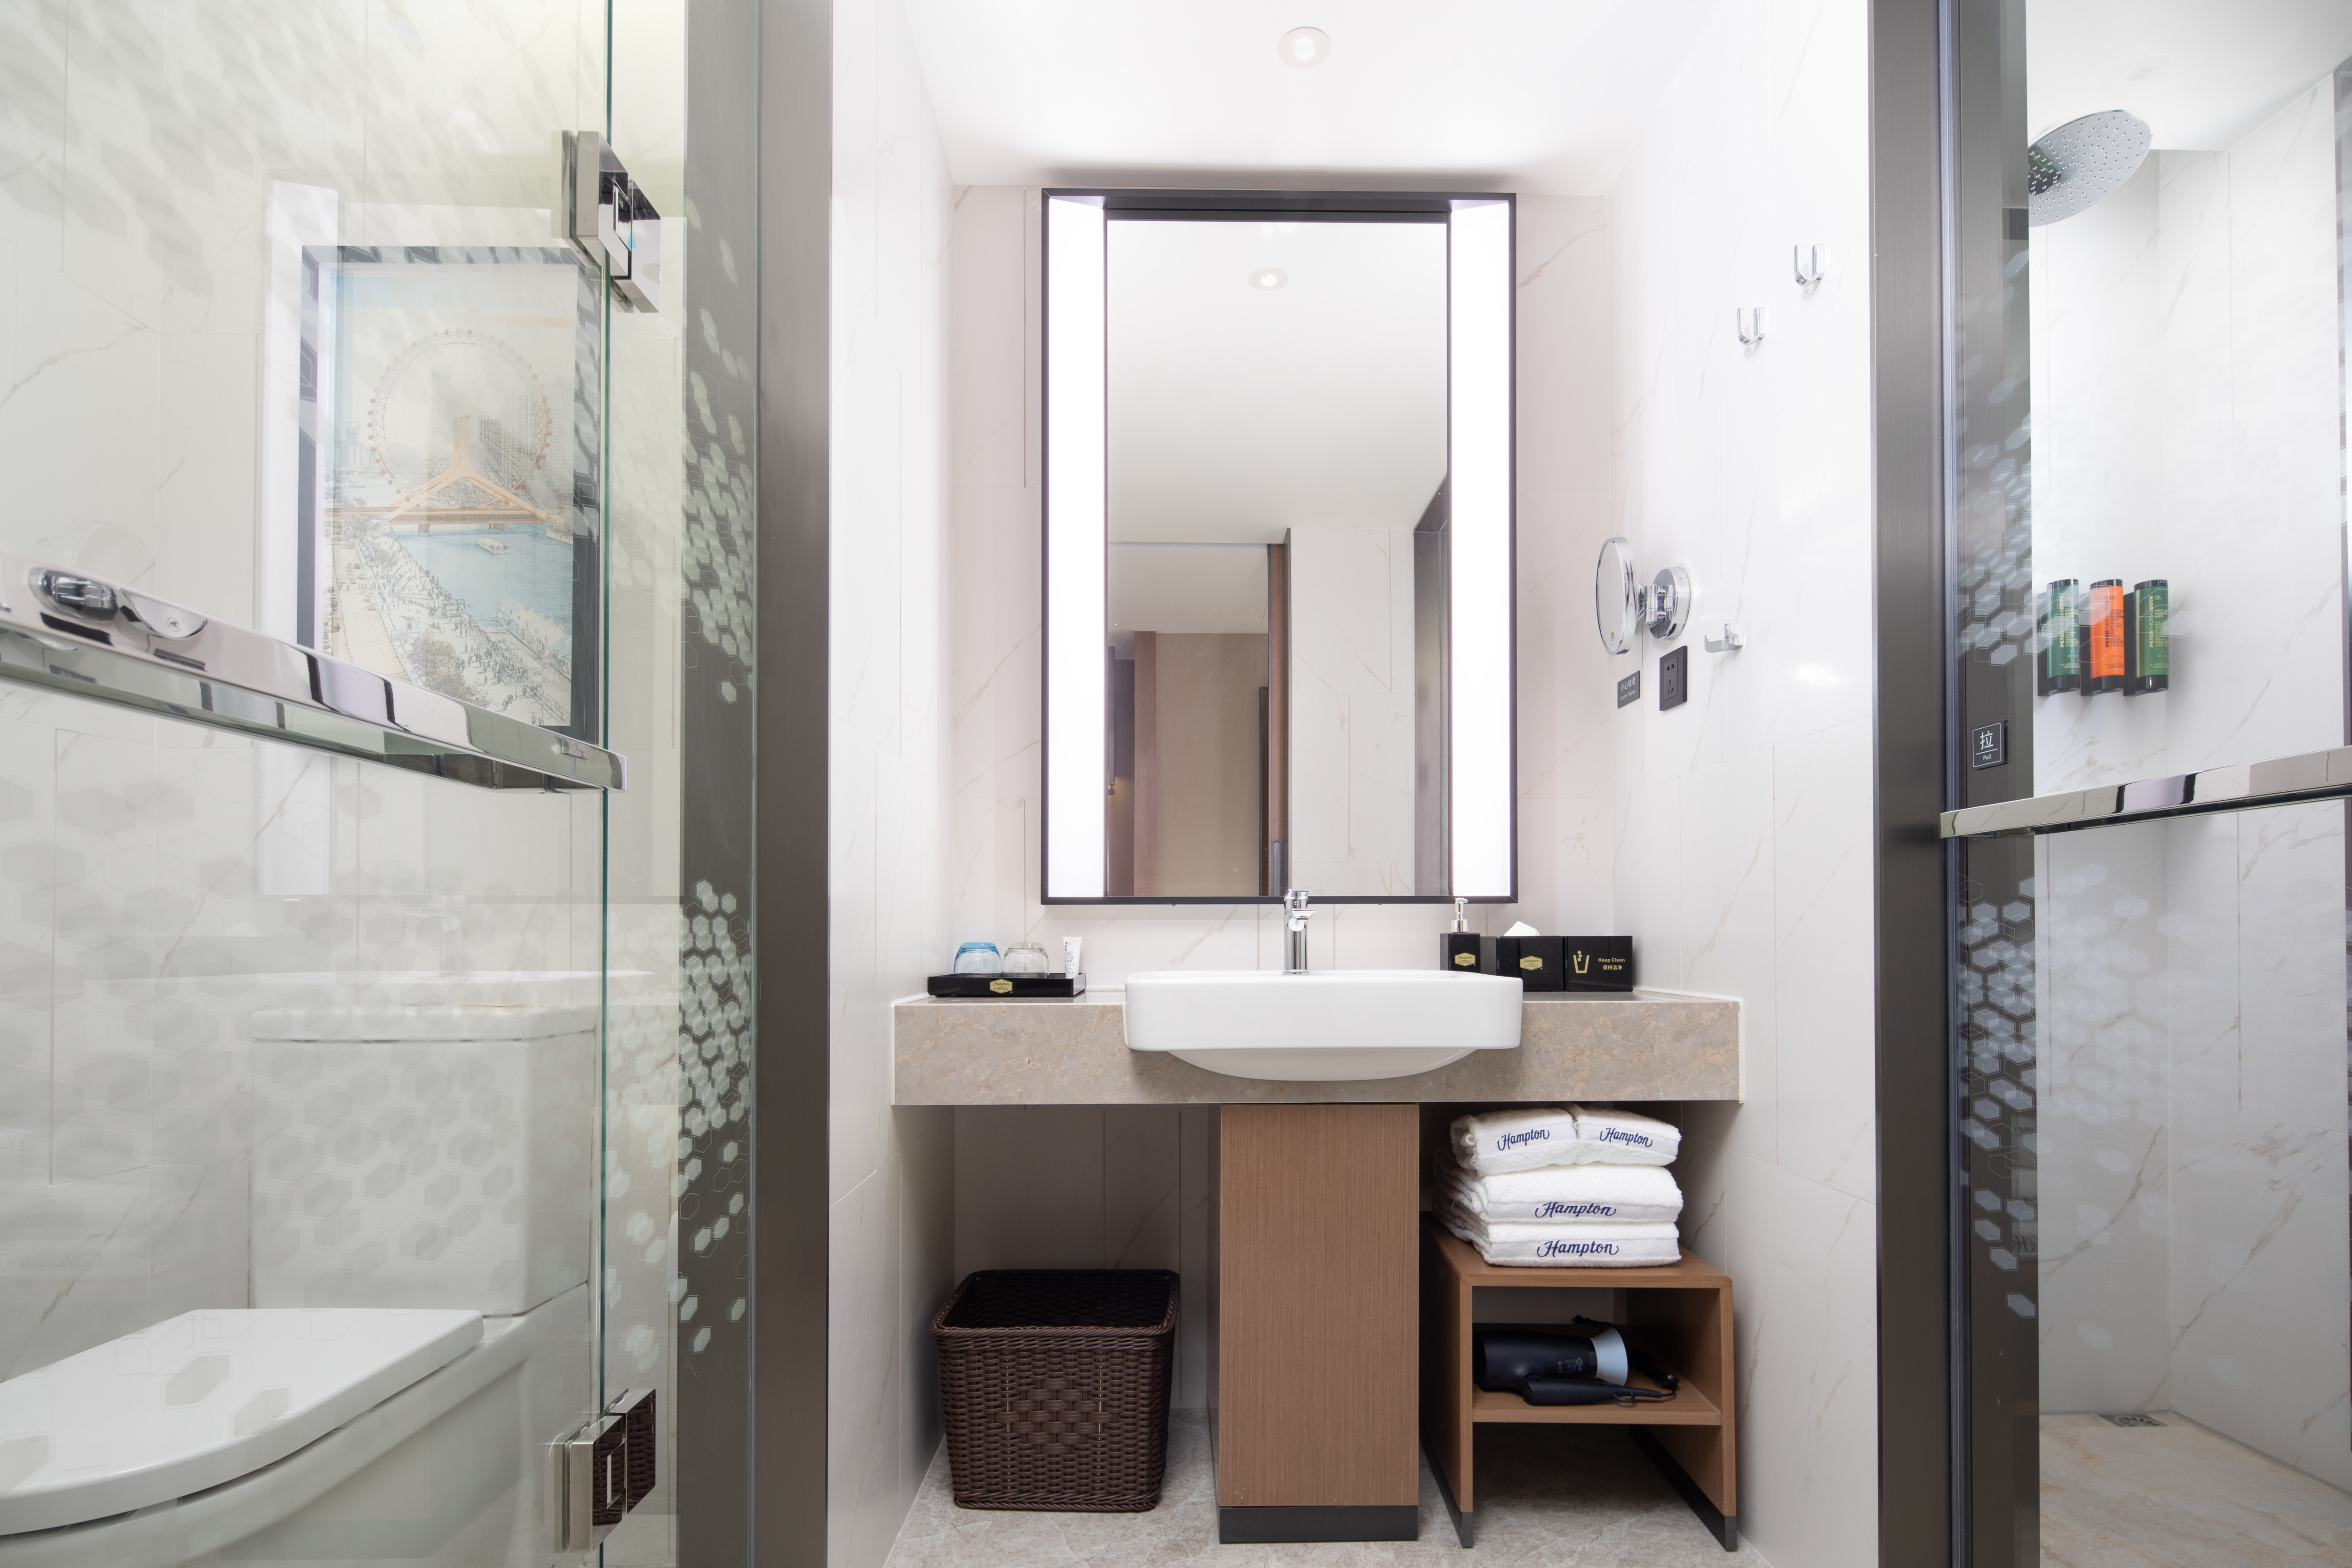 guest room bathroom vanity, mirror, towels